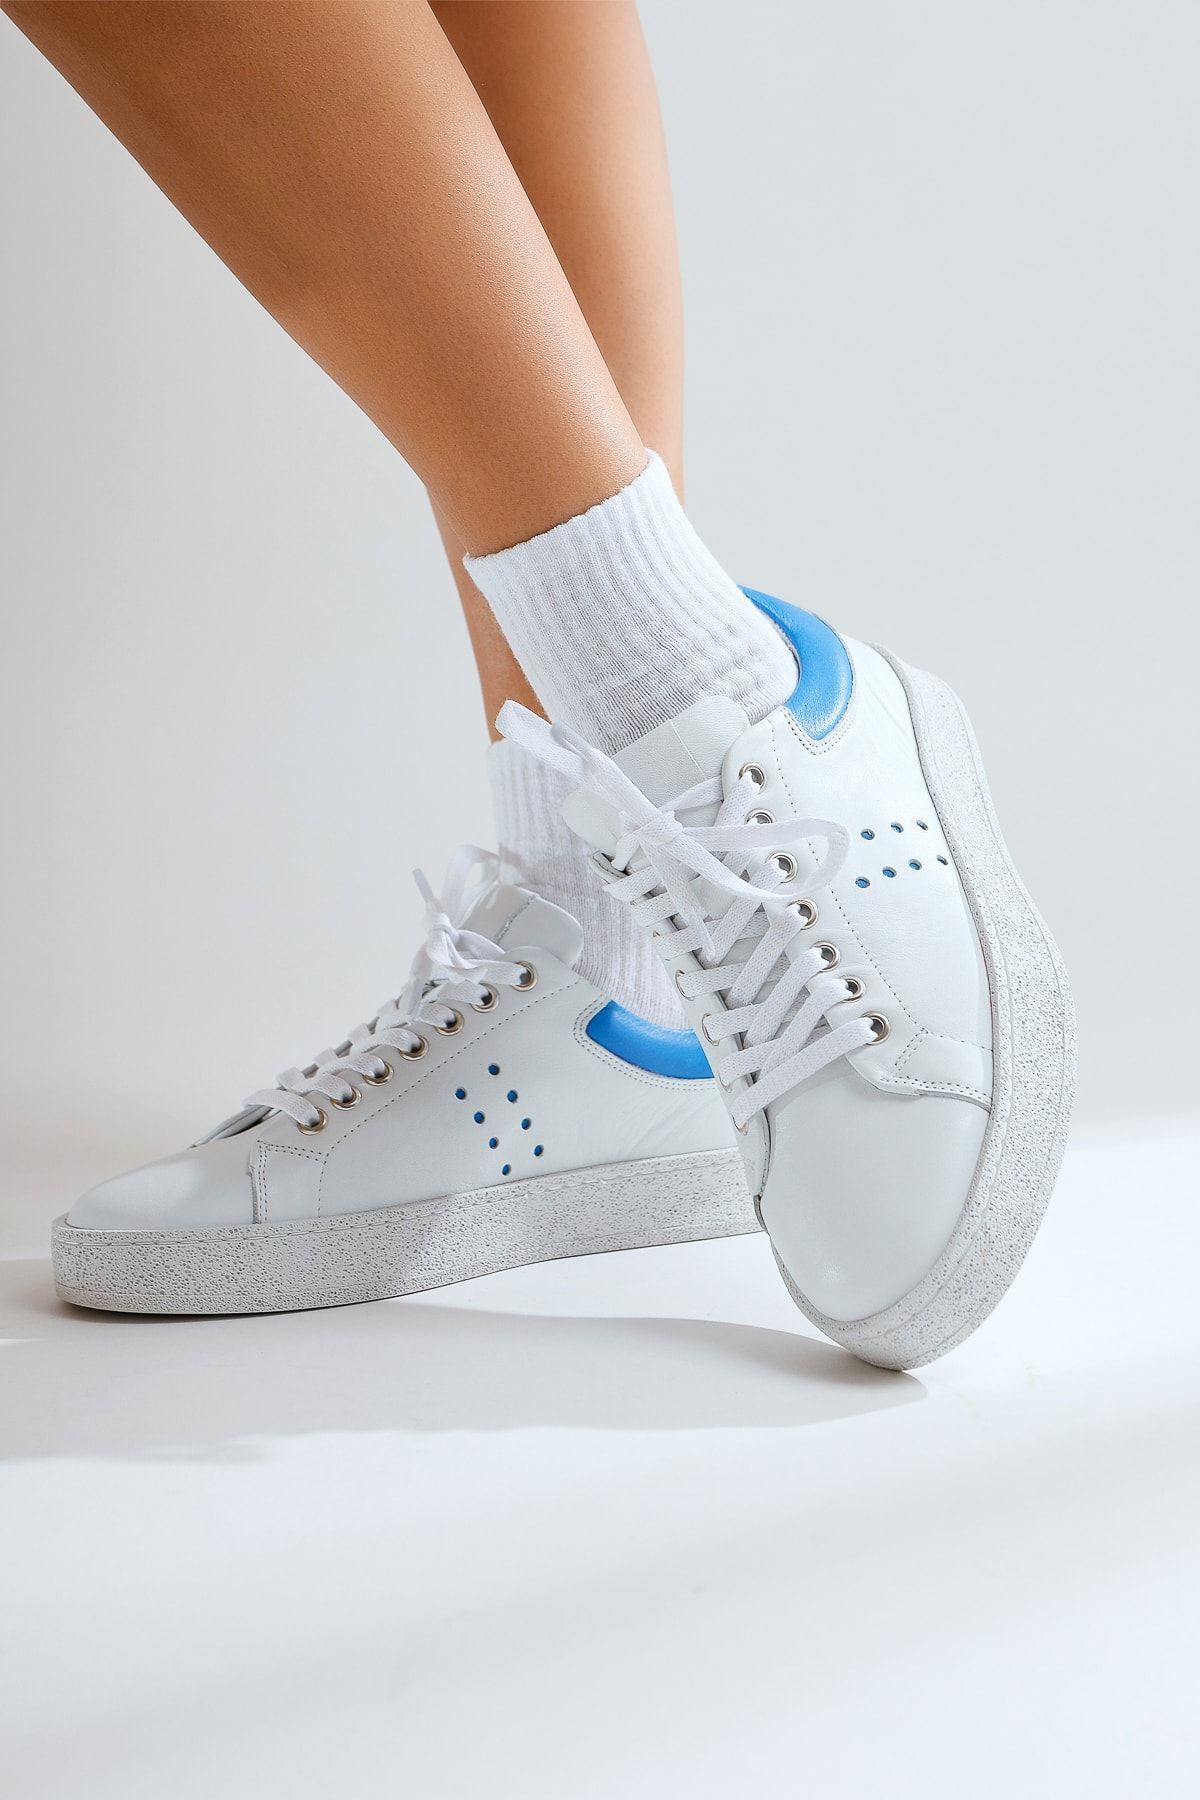 Limoya Hakiki Deri Willy Beyaz Mavi Sneakers Spor Ayakkabı